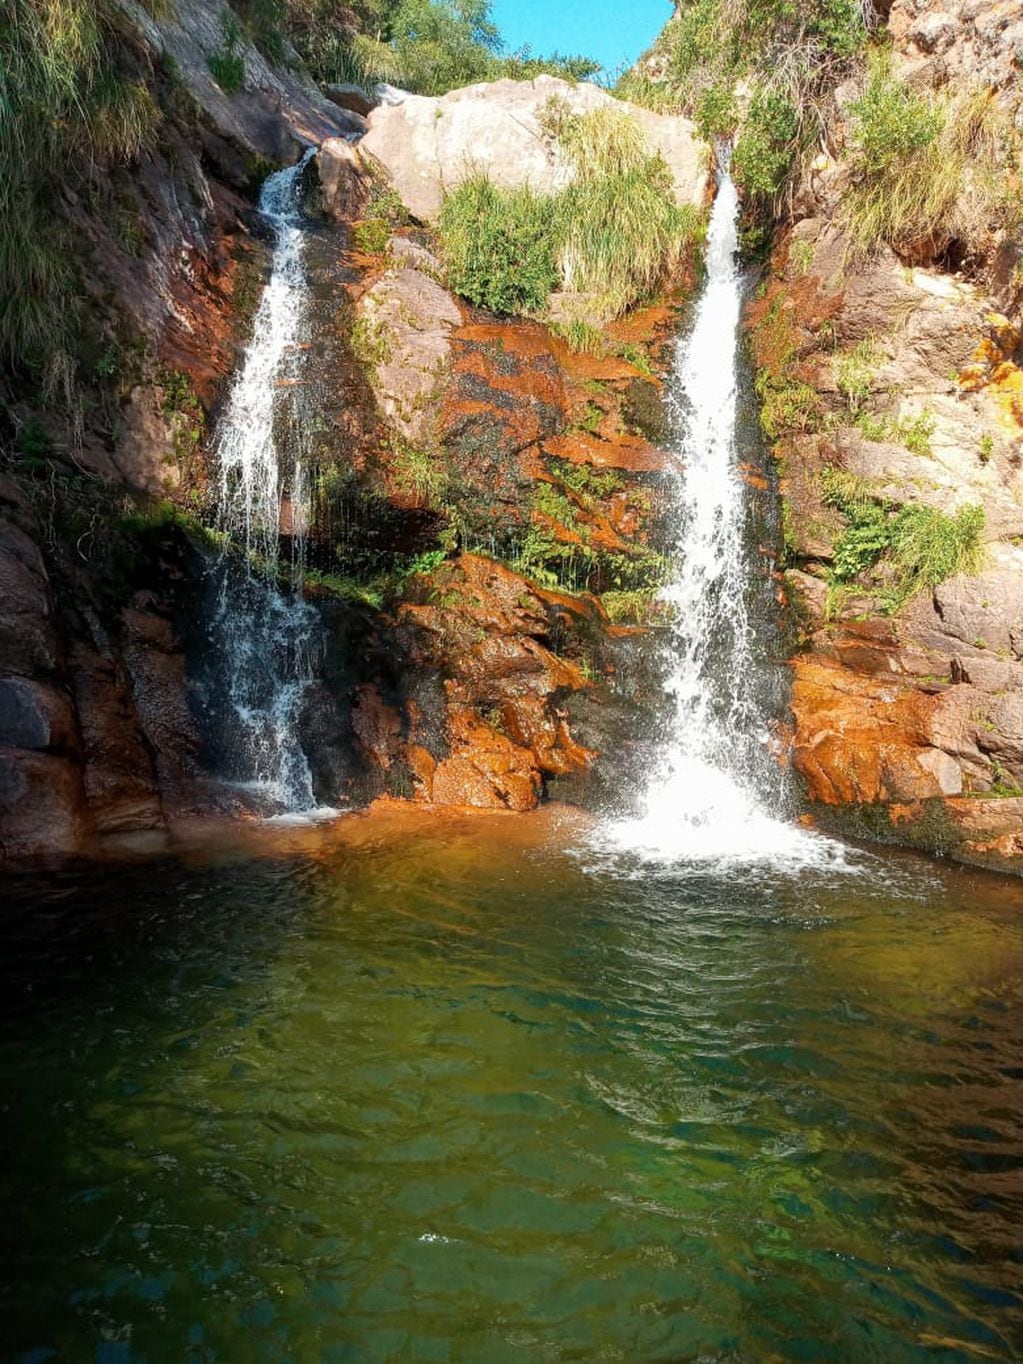 La cascada tiene unos 9 metros de altura y una olla de aguas frescas y cristalinas. (Foto: Andrea Molina)